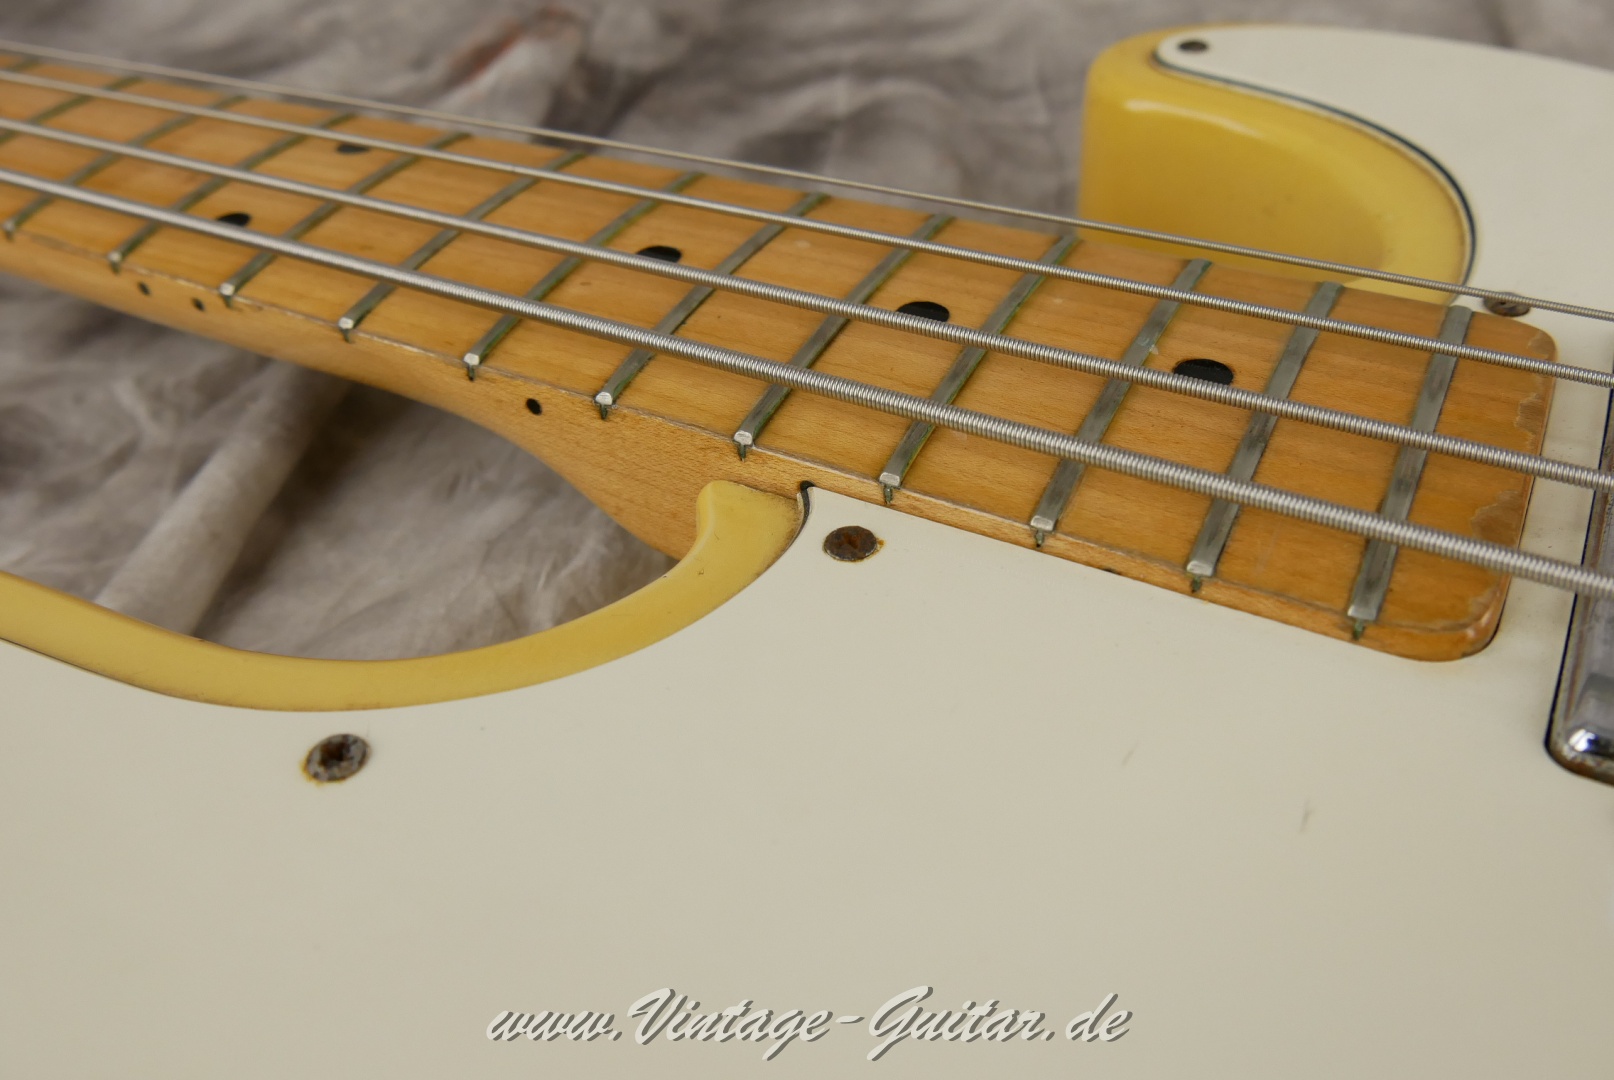 Fender-Telecaster-Bass-1972-014.JPG